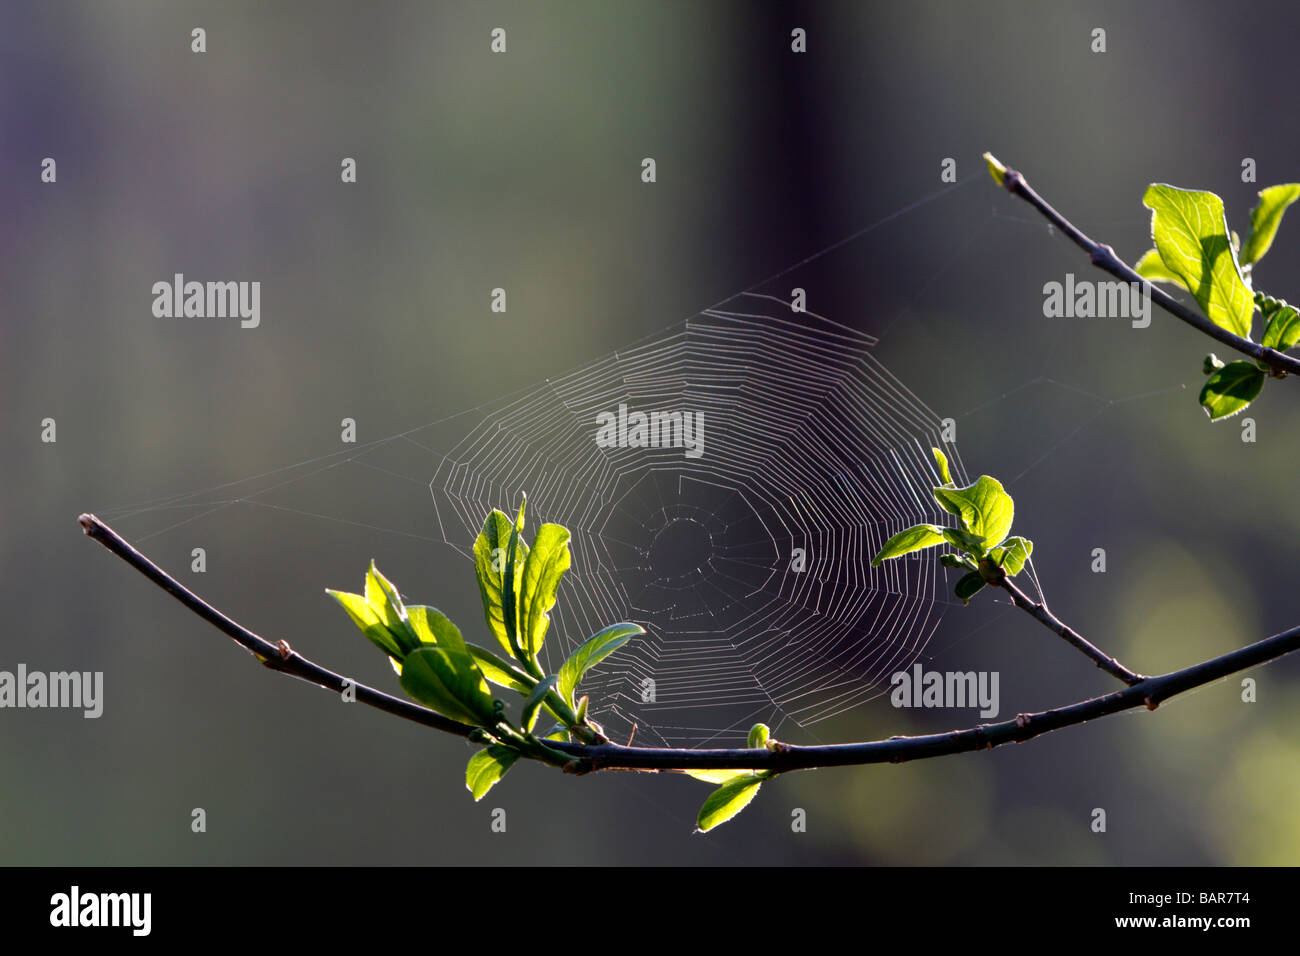 Spider web against a dark background Stock Photo